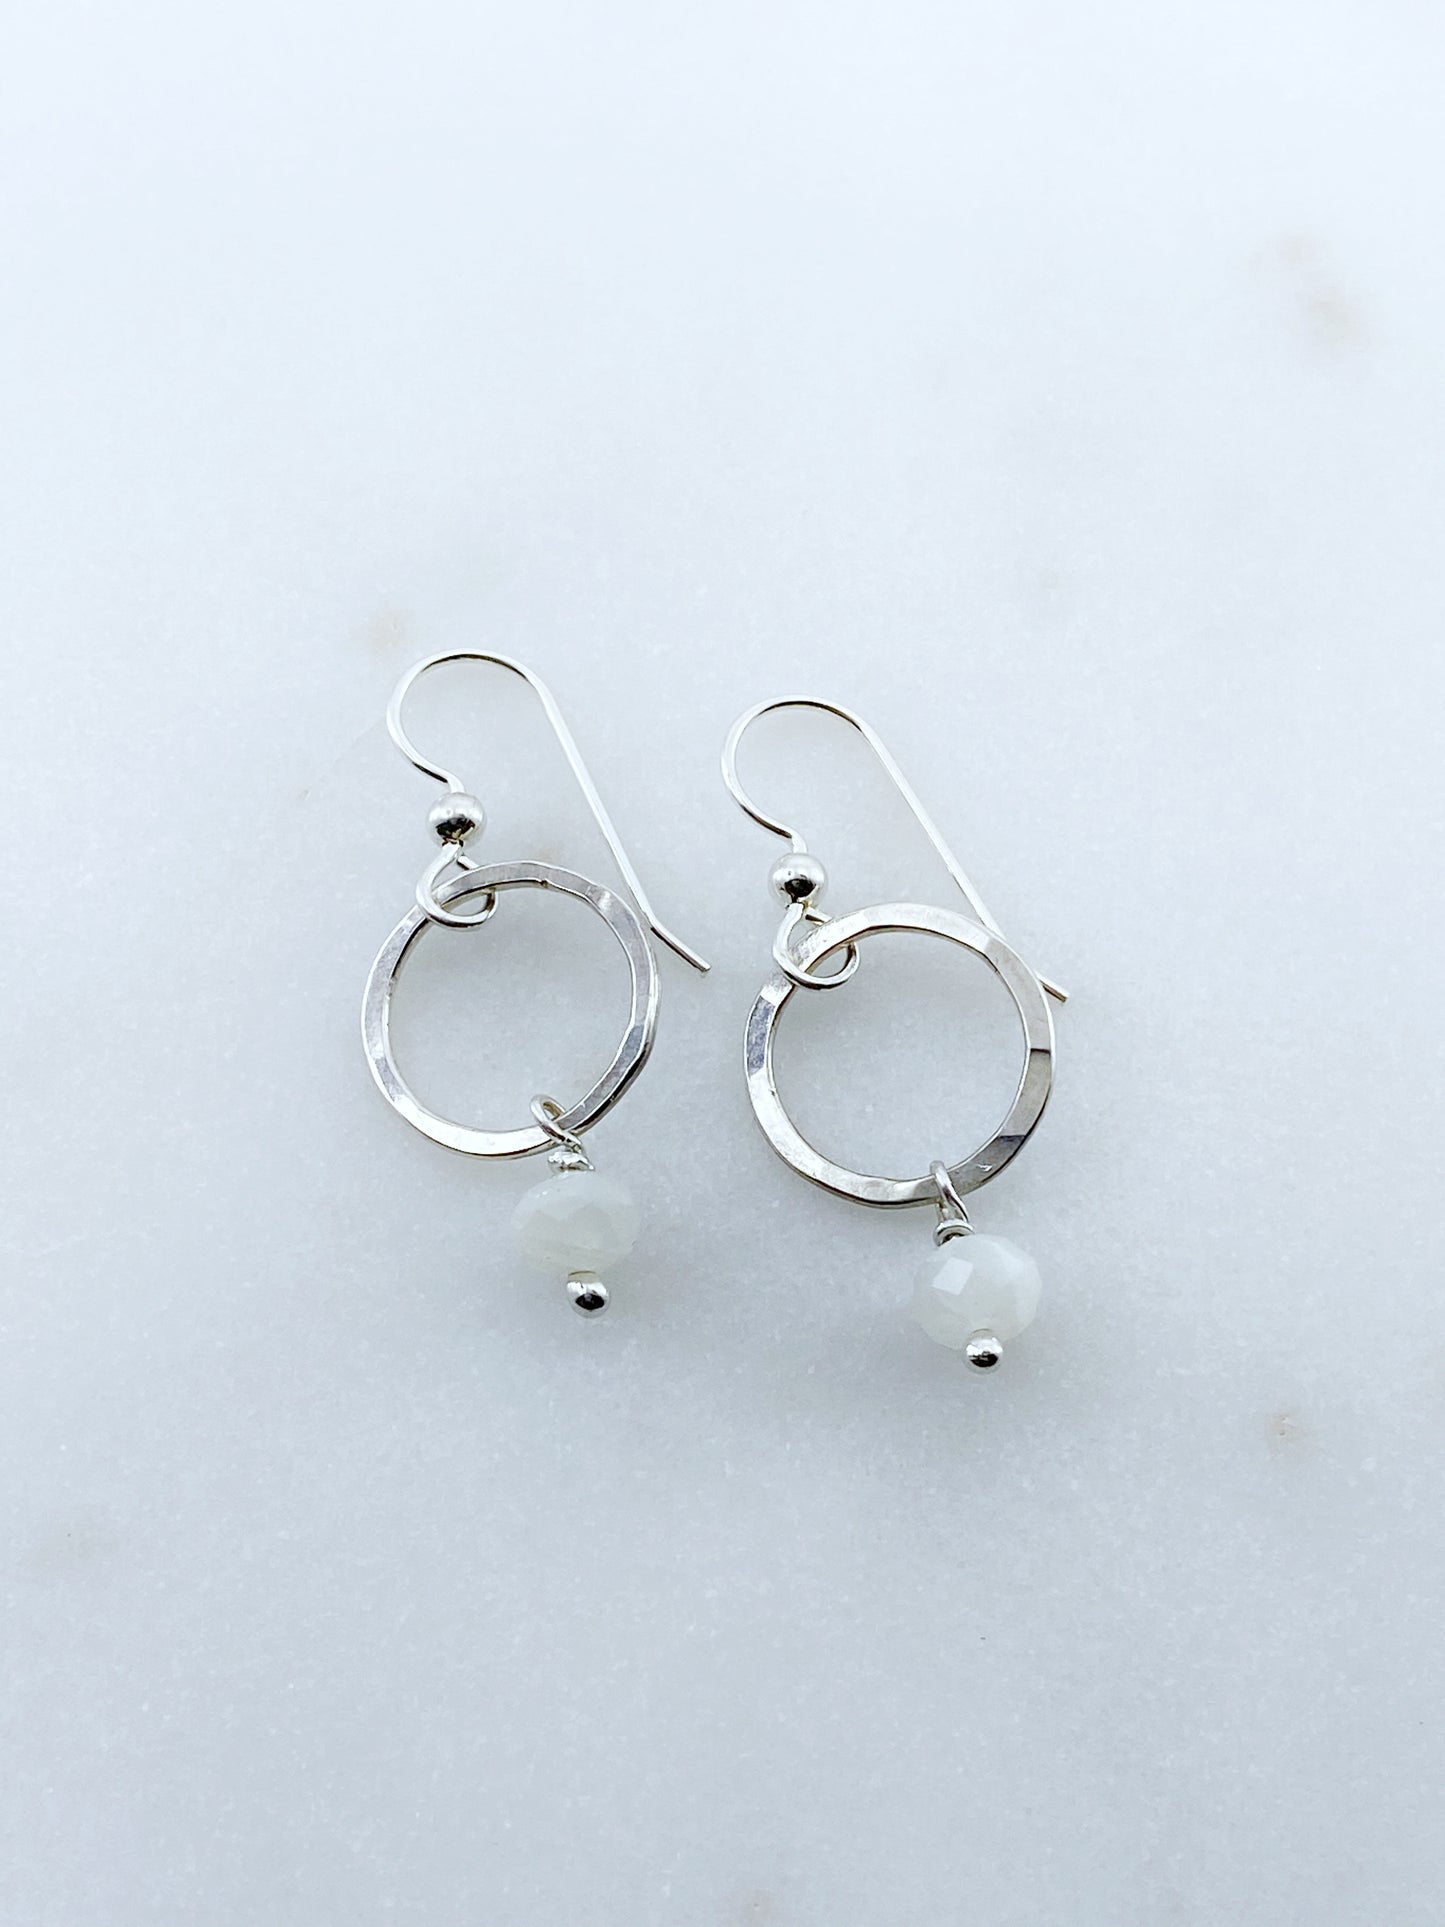 Sterling silver hoop earrings with moonstone